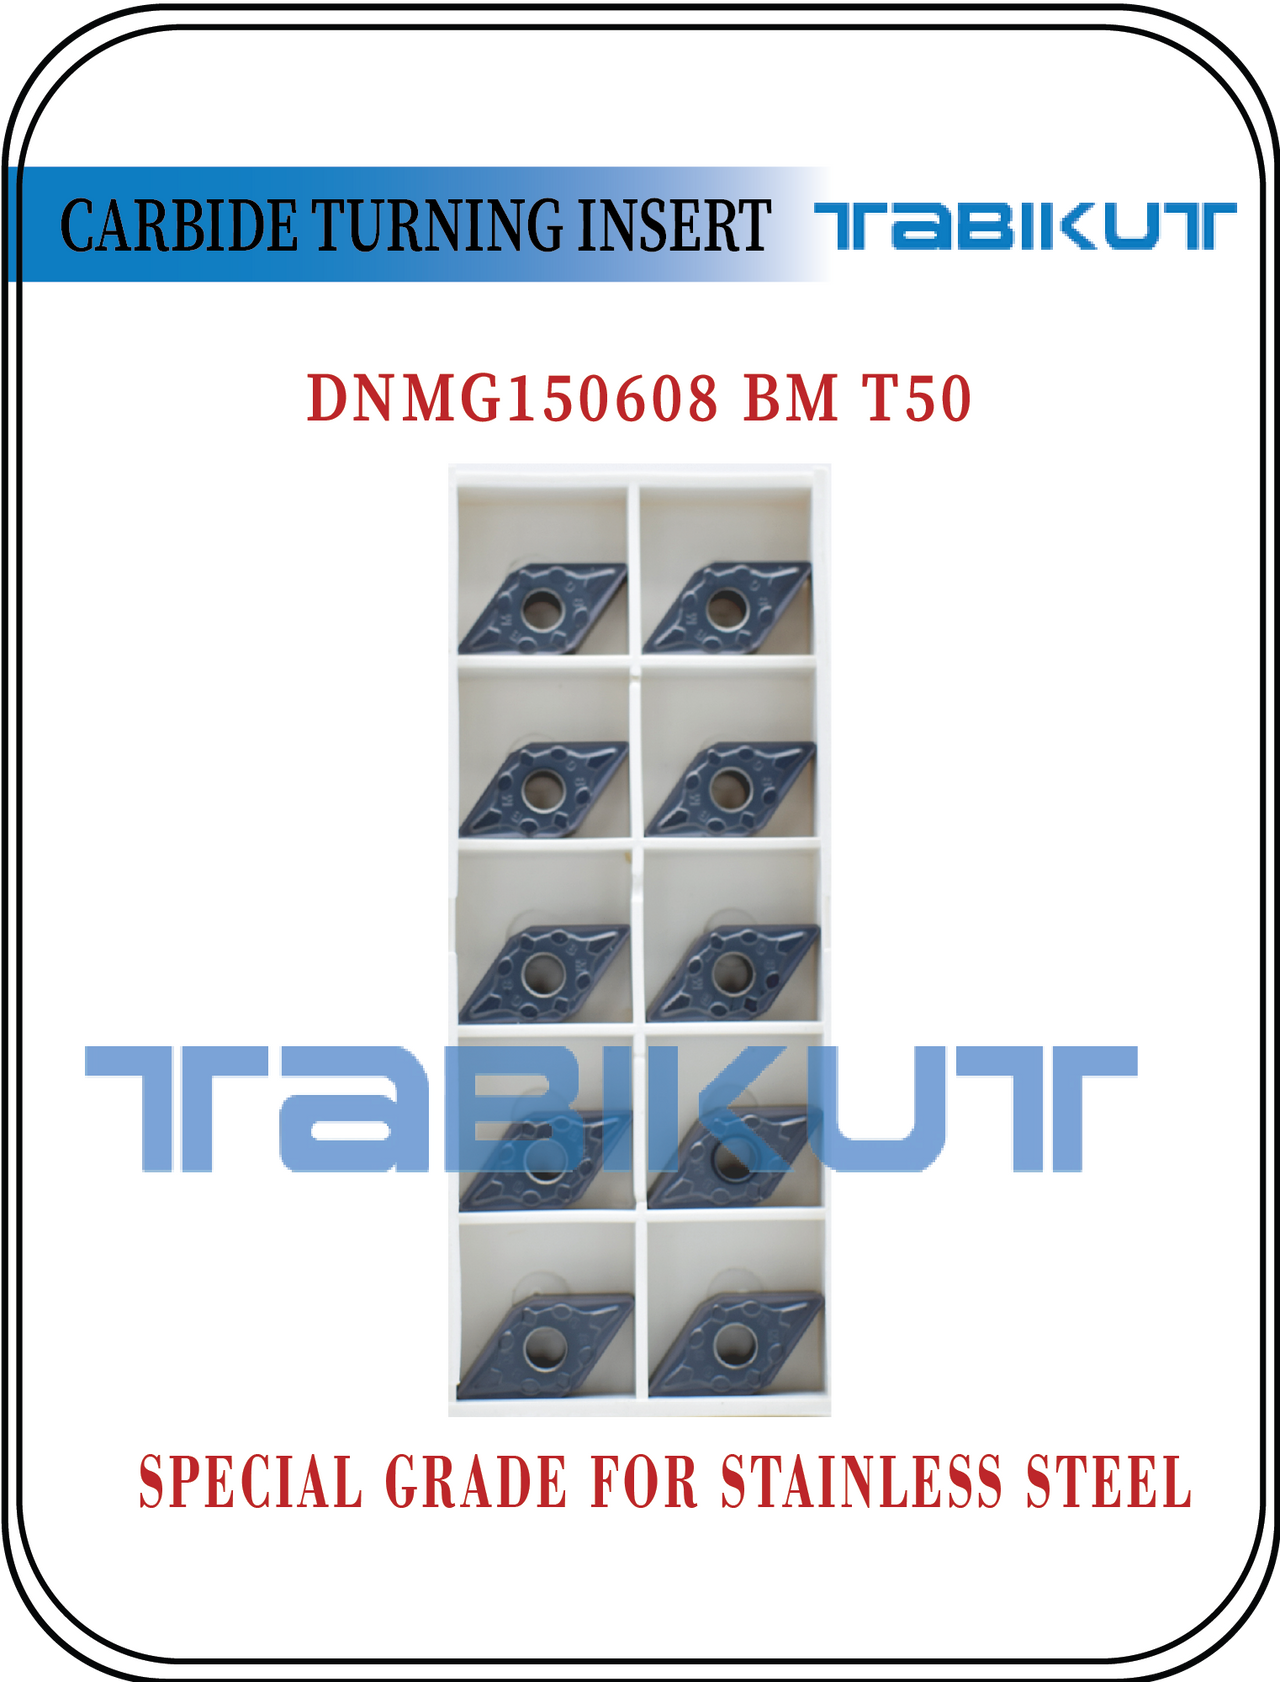 DNMG150604/08/12 BM T50 Stainless steel grade tabikut pack of 10